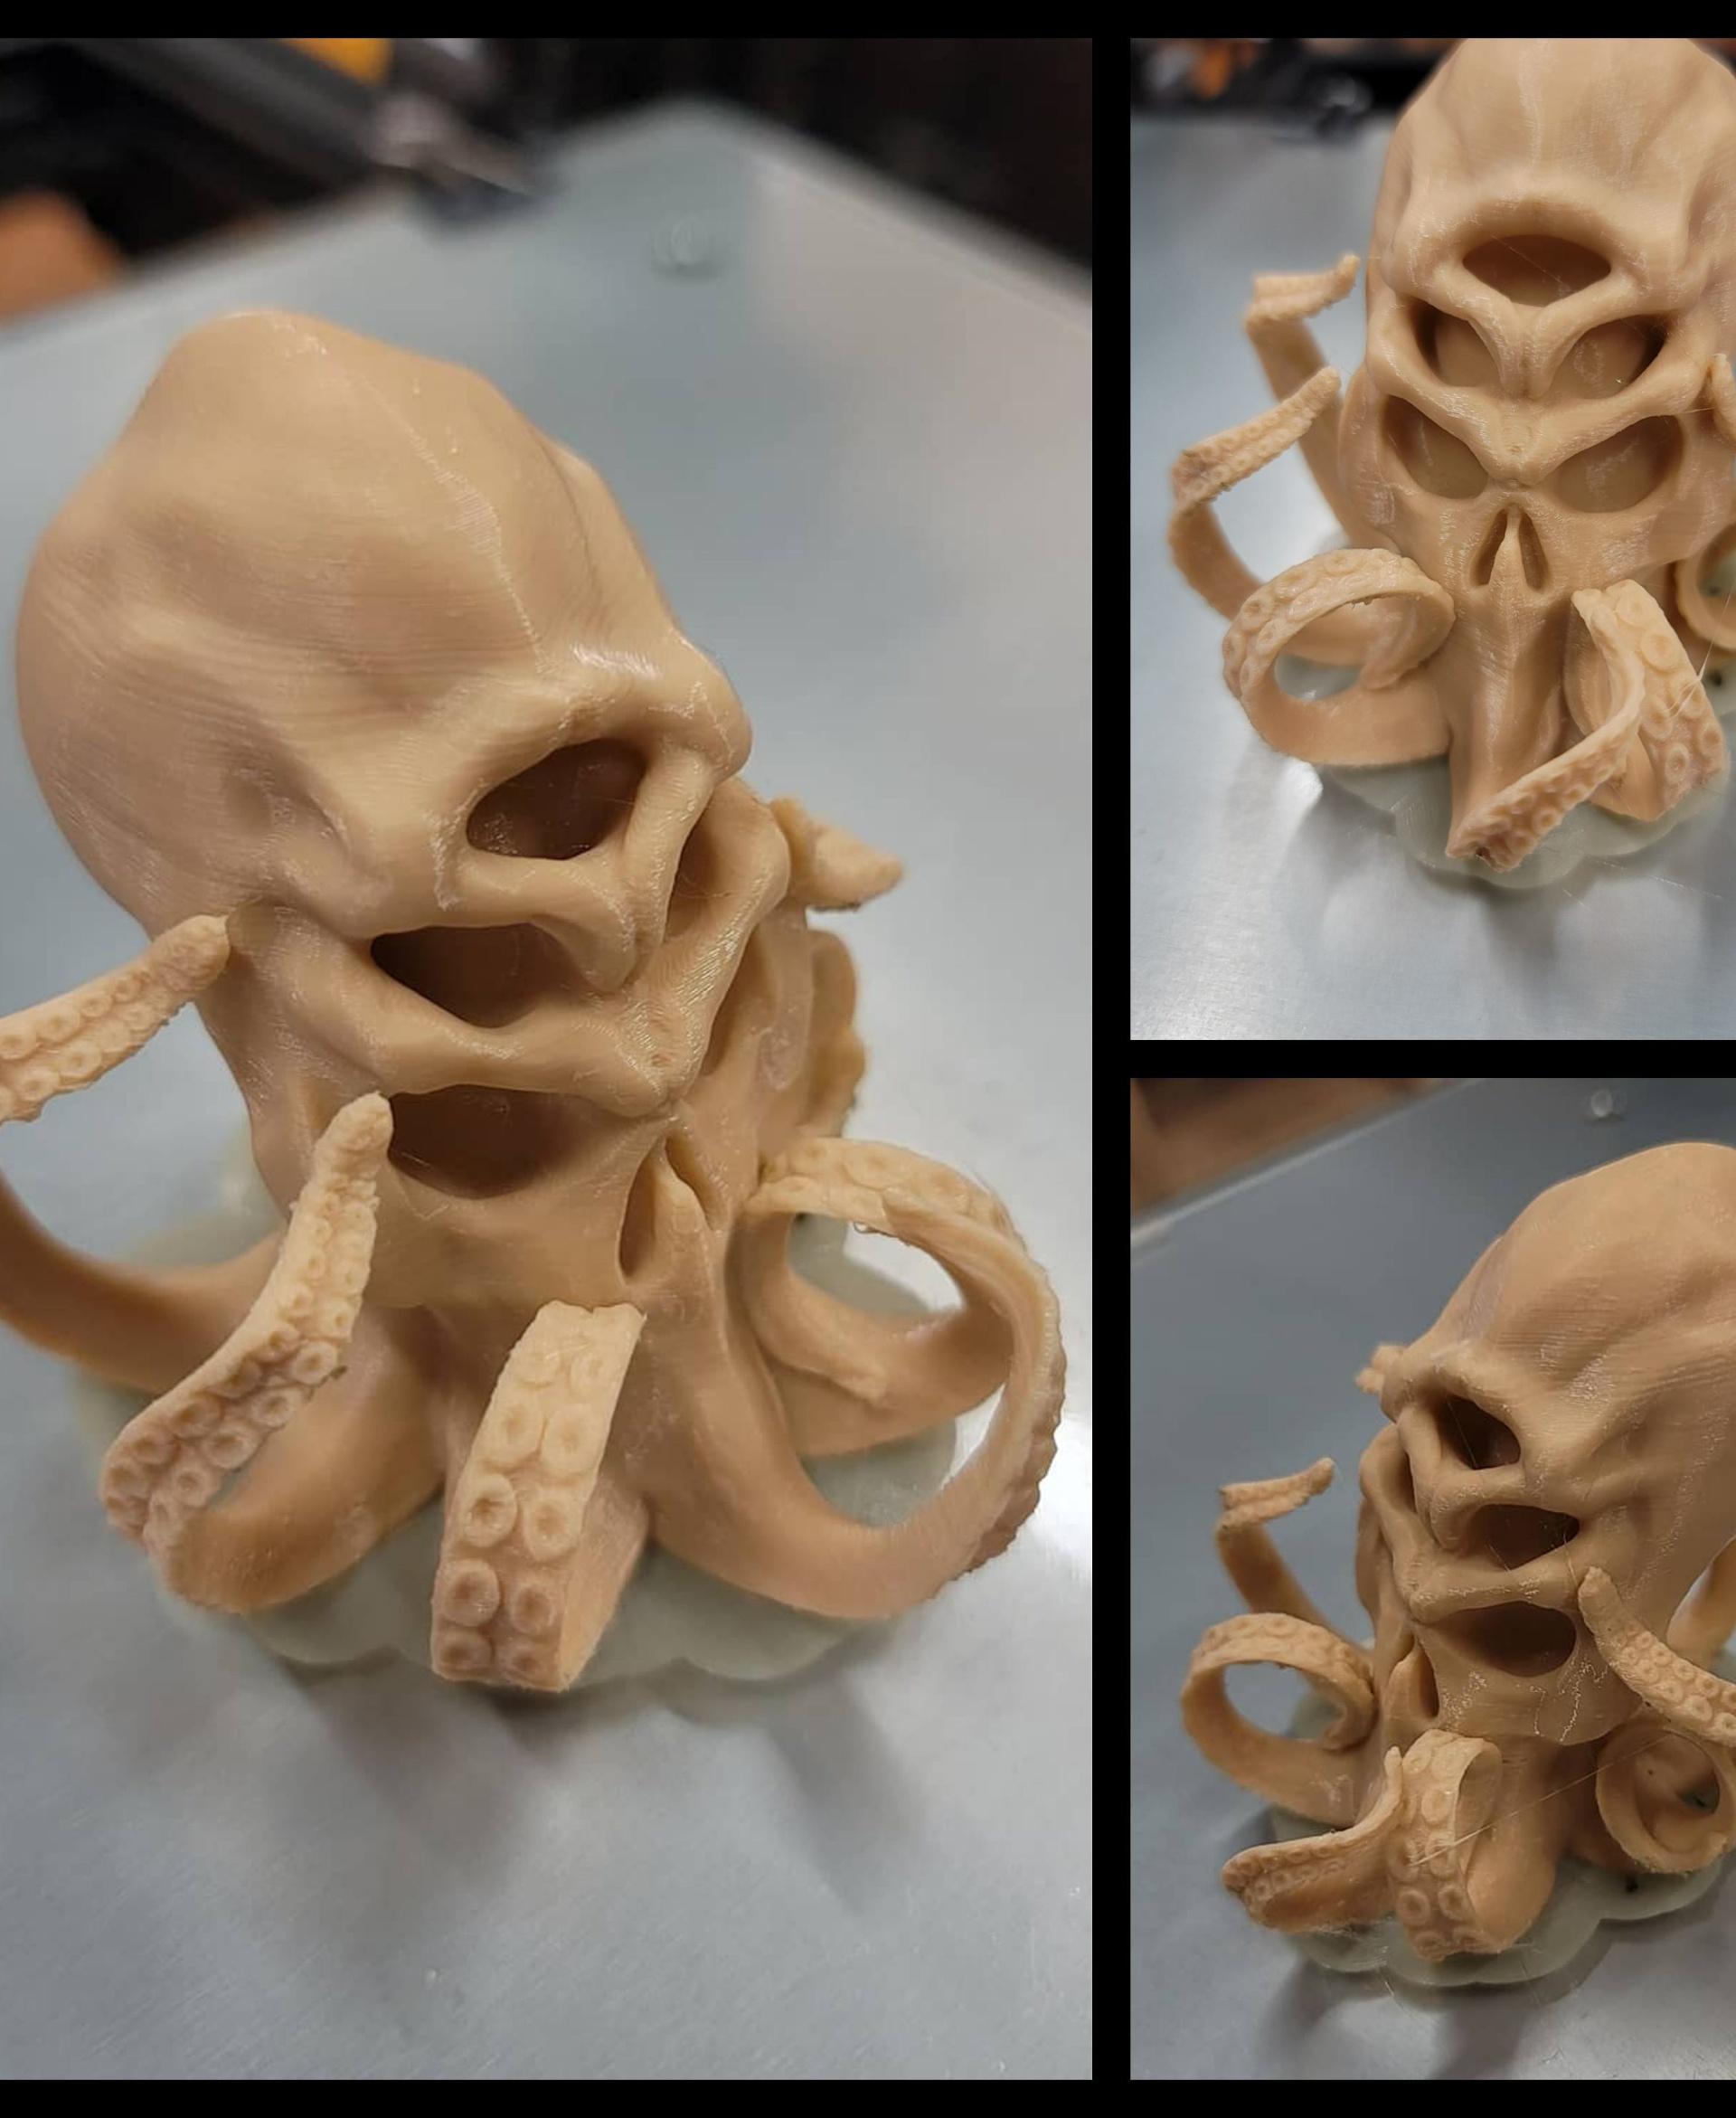 Cthulhu Skull  3d model